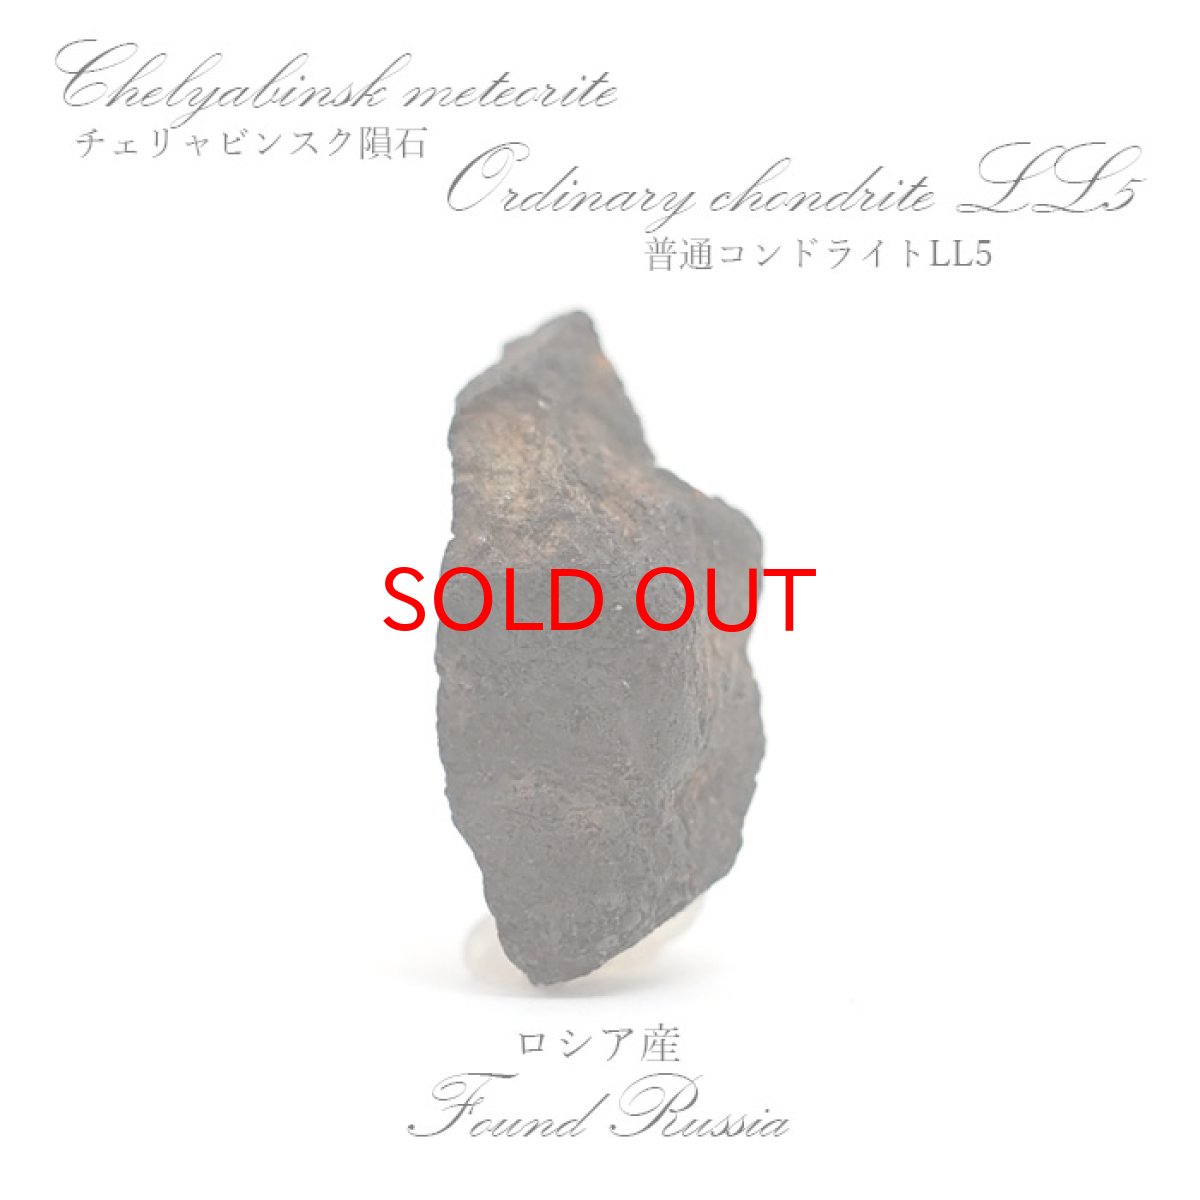 画像1: 【一点物】 チェリチャビンスク隕石 ロシア産 普通コンドライト LL5 Cherichabinsk meteorite Ordinary chondrite (1)